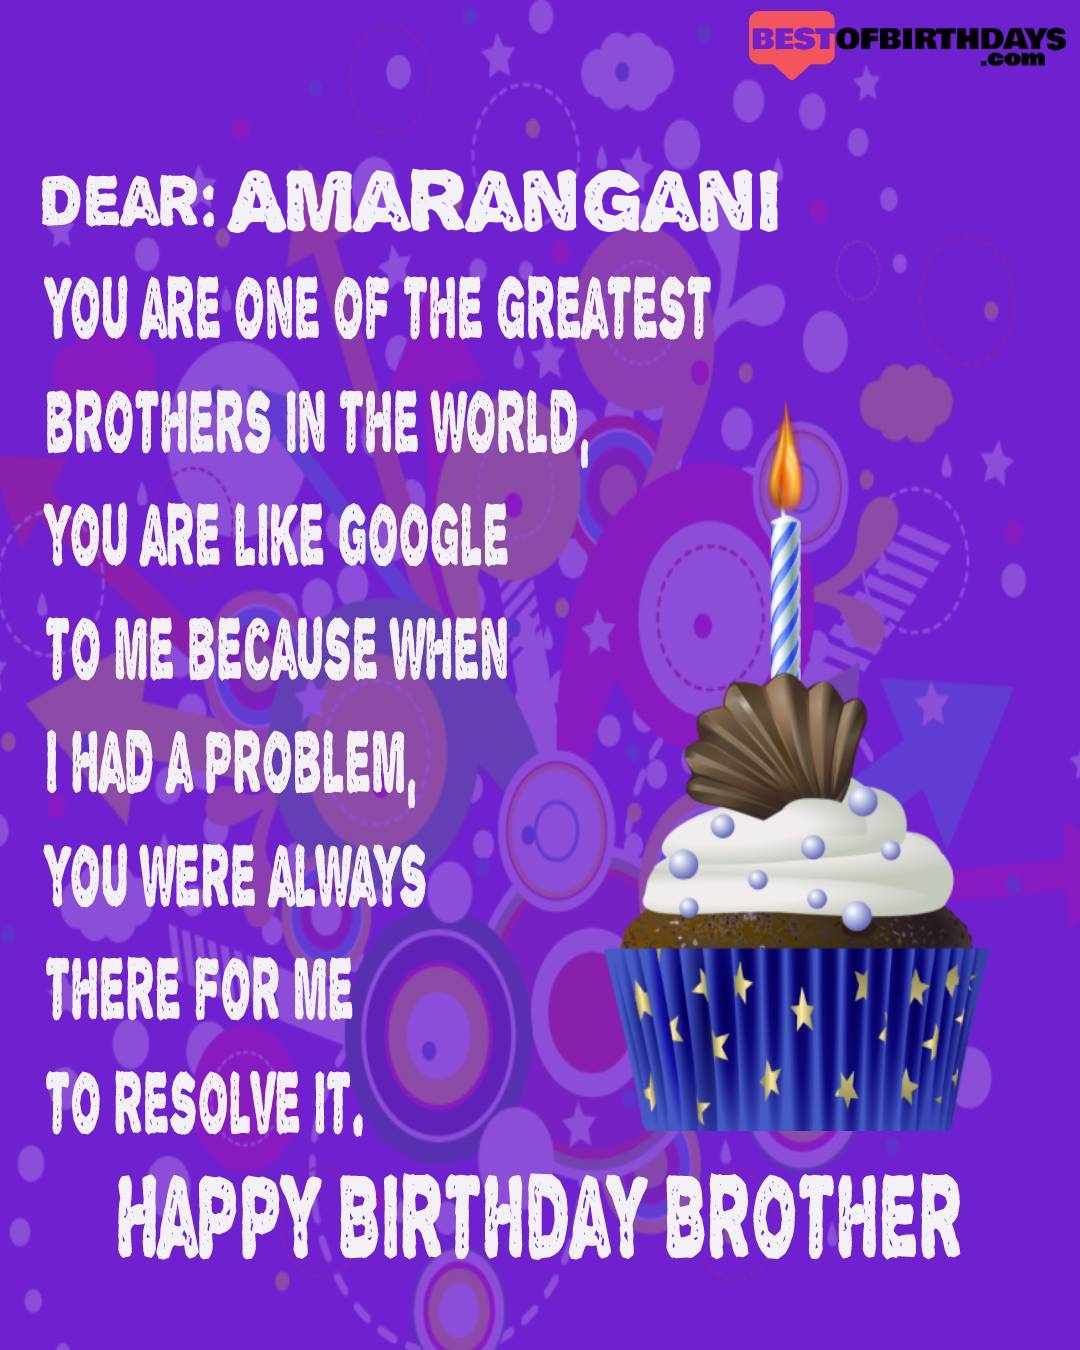 Happy birthday amarangani bhai brother bro